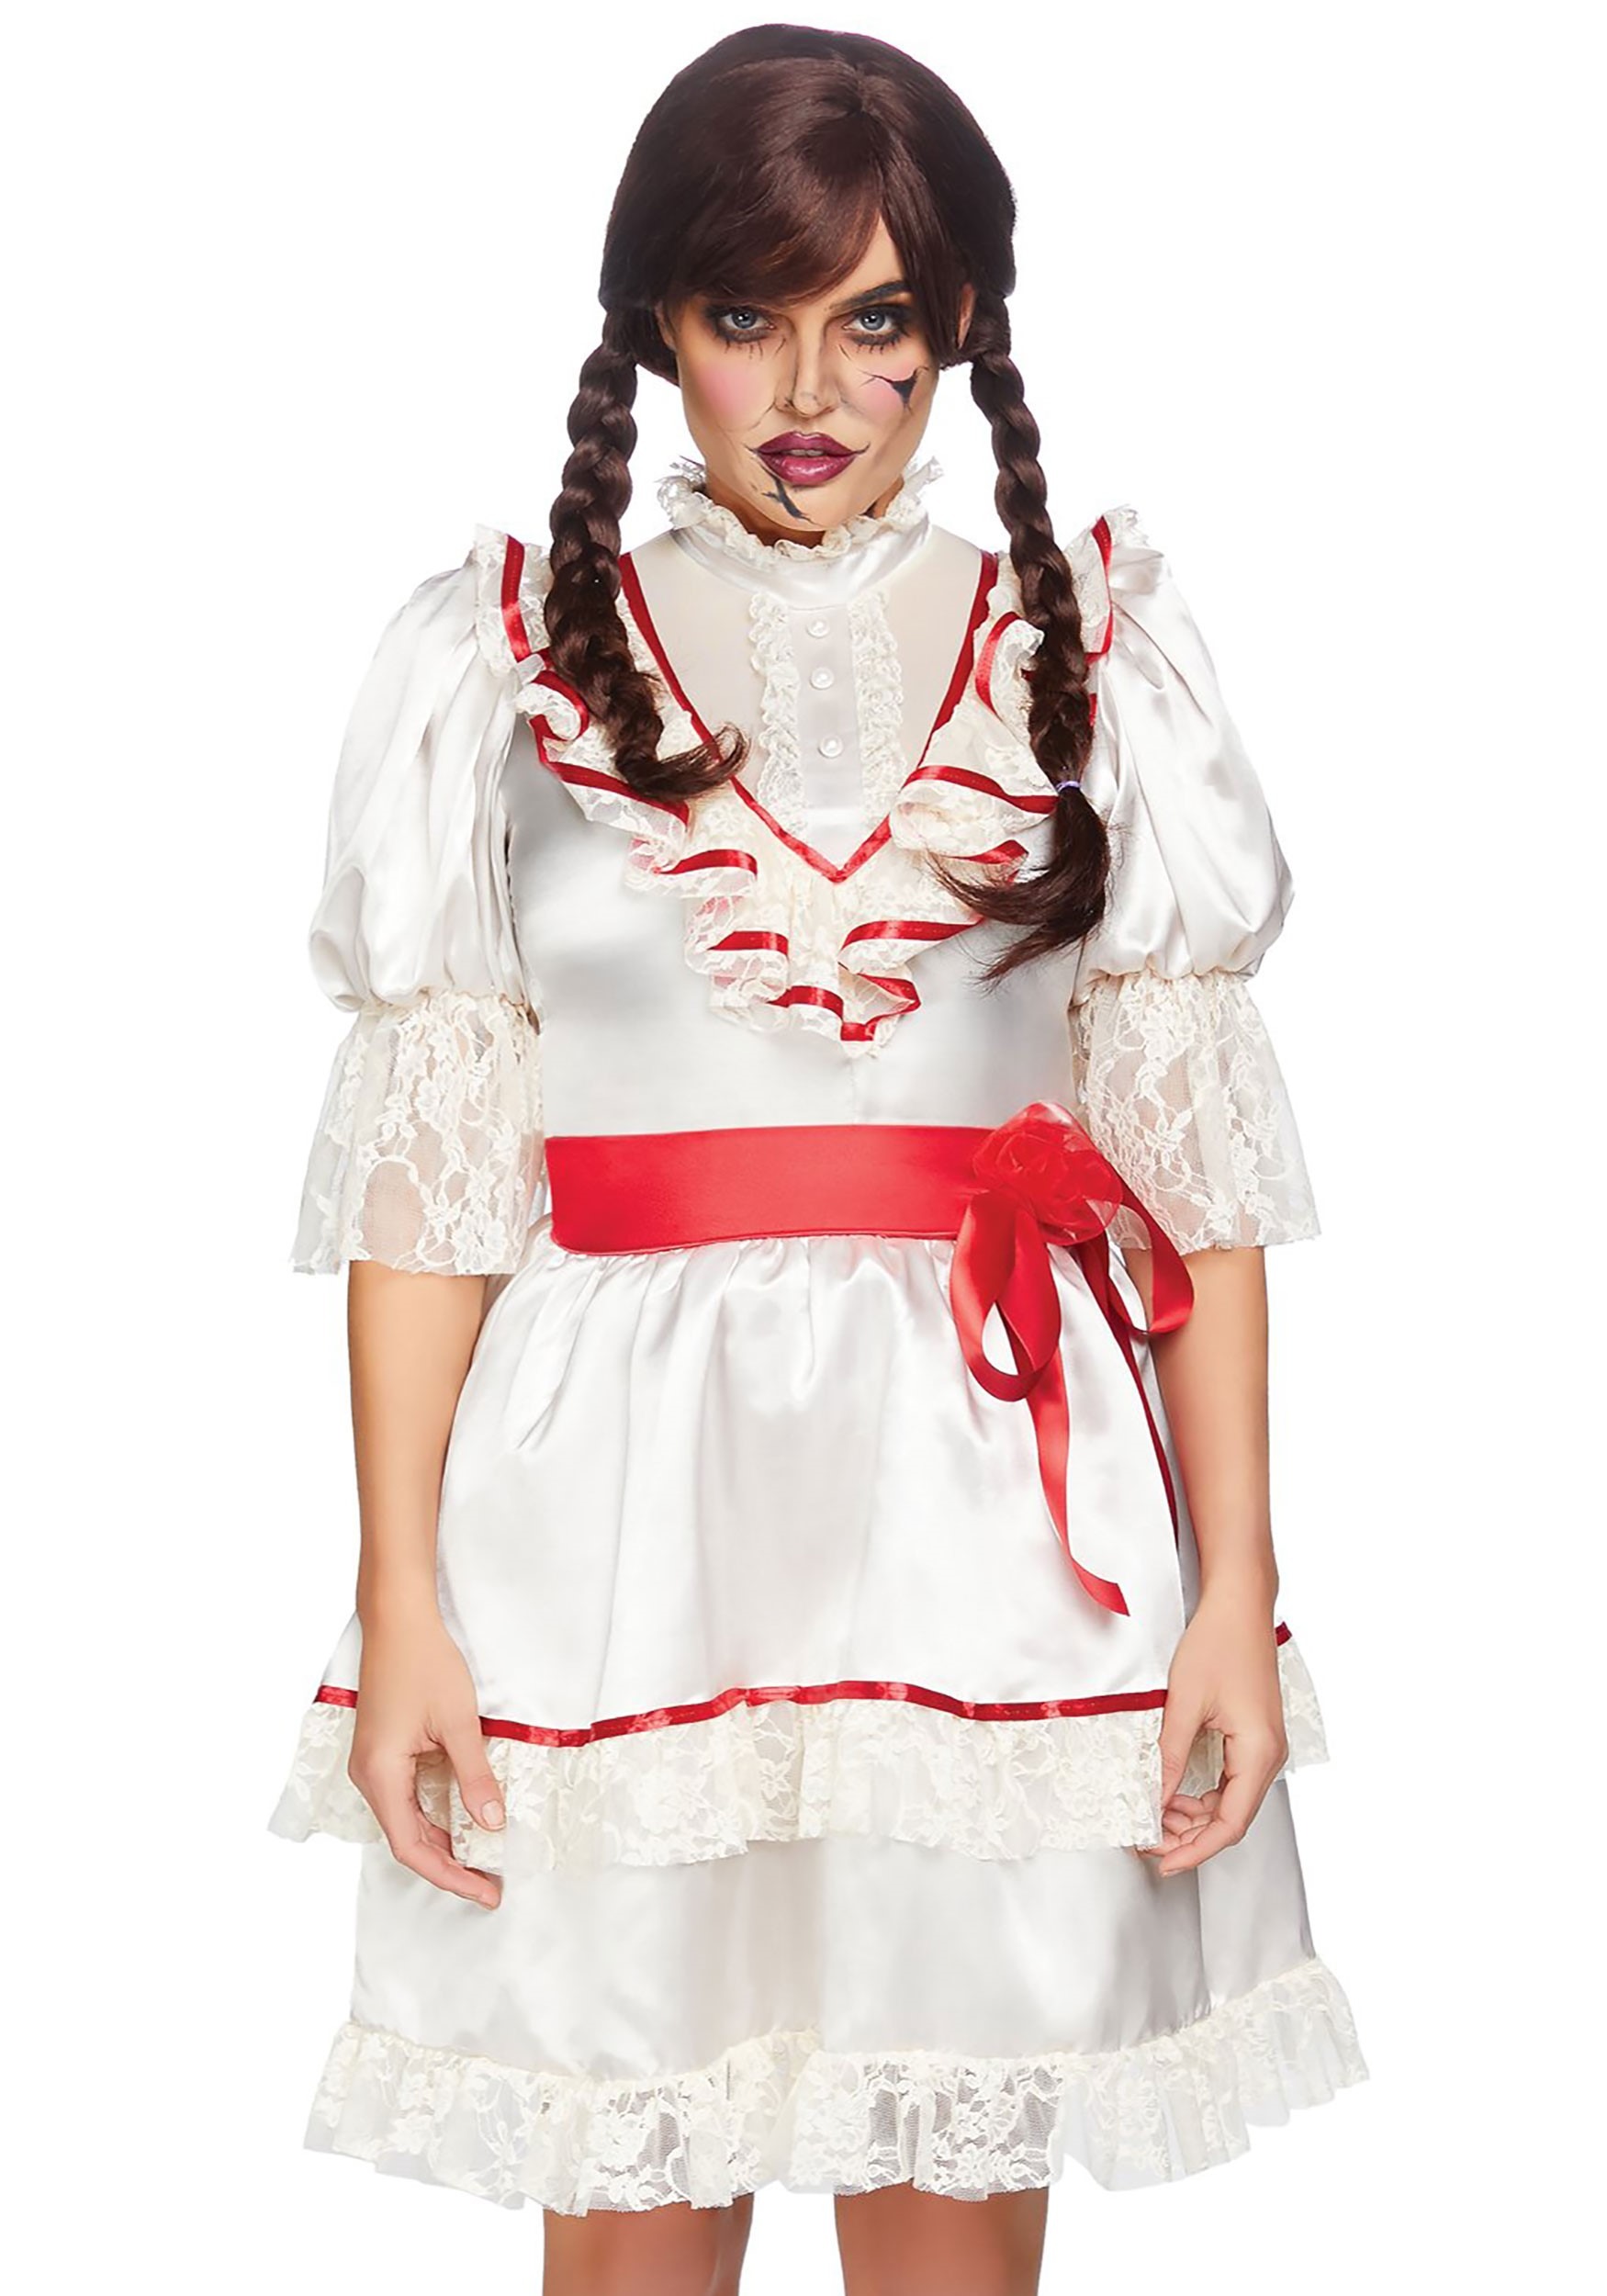 Haunted Doll Dress Women's Fancy Dress Costume